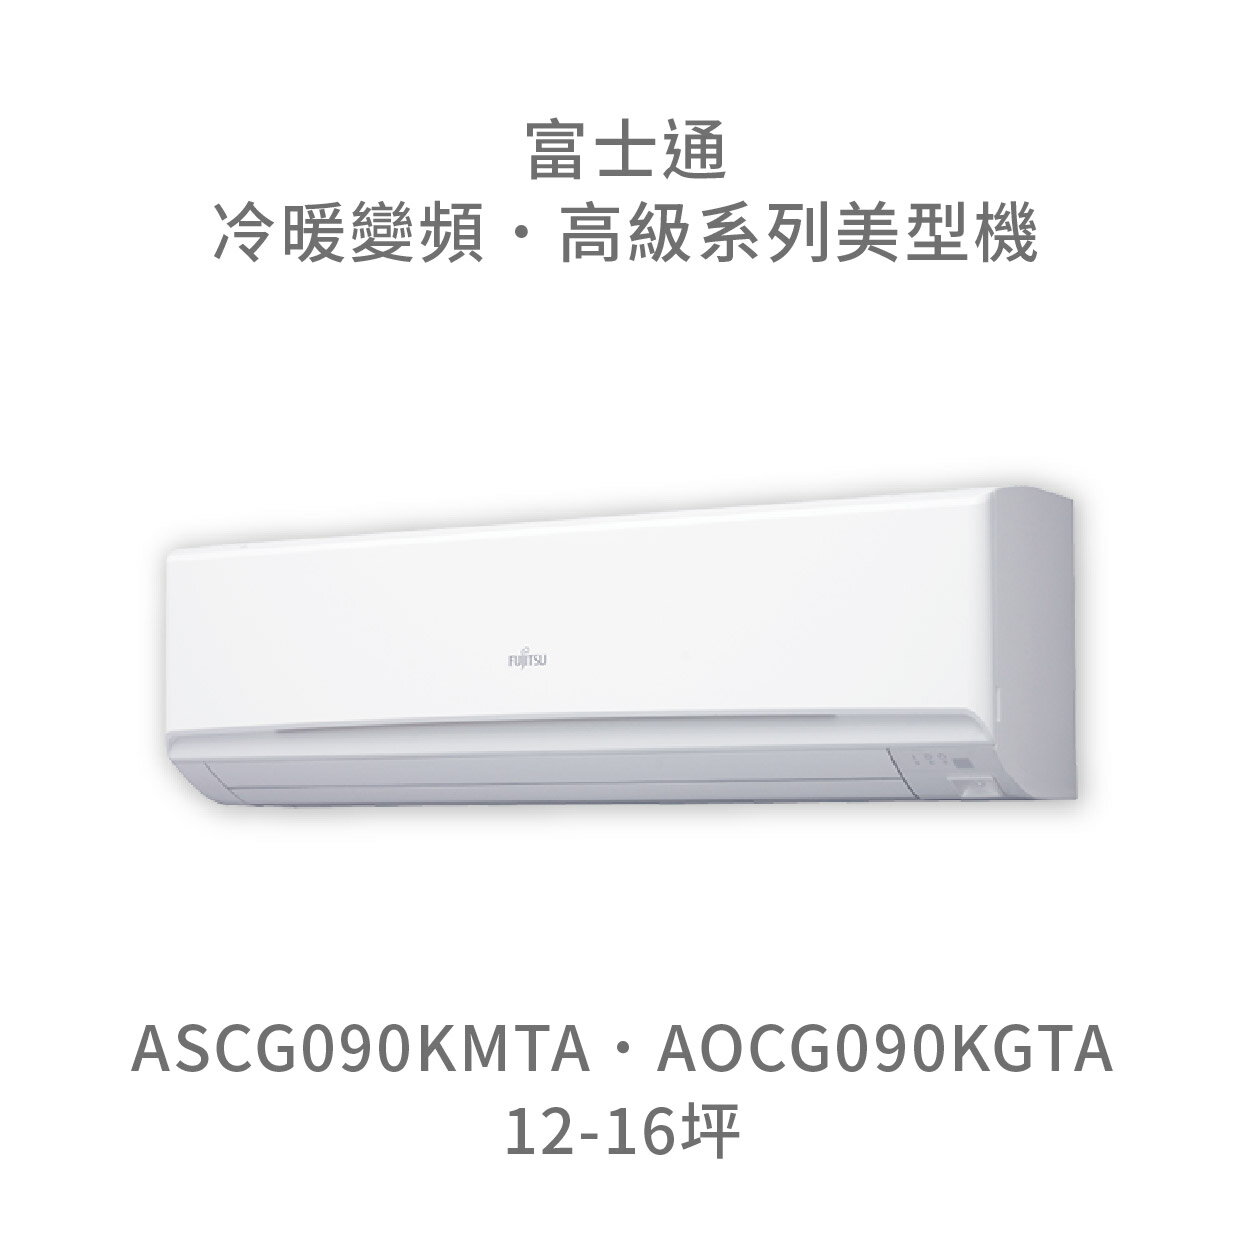 【點數10%回饋】【日本富士通】AOCG090KMTA/ASCG090KMTA 高級系列 冷暖 變頻冷氣 含標準安裝